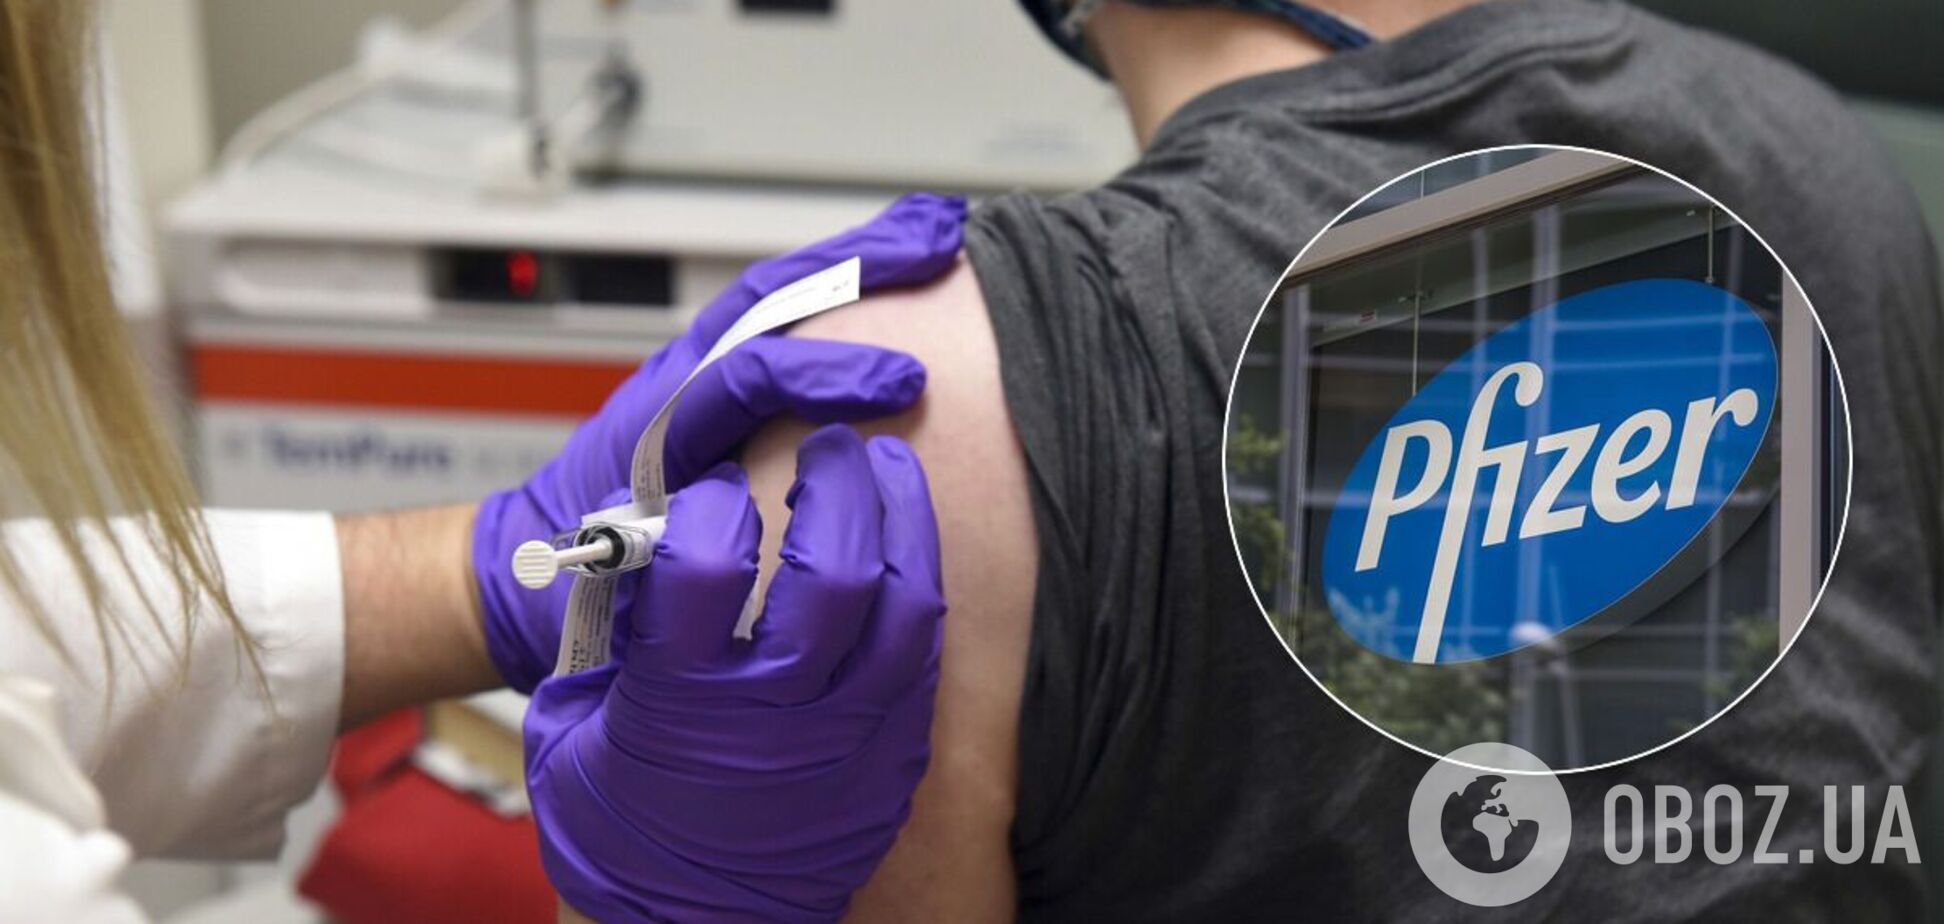 Во время испытаний вакцины Pfizer умерли шесть человек